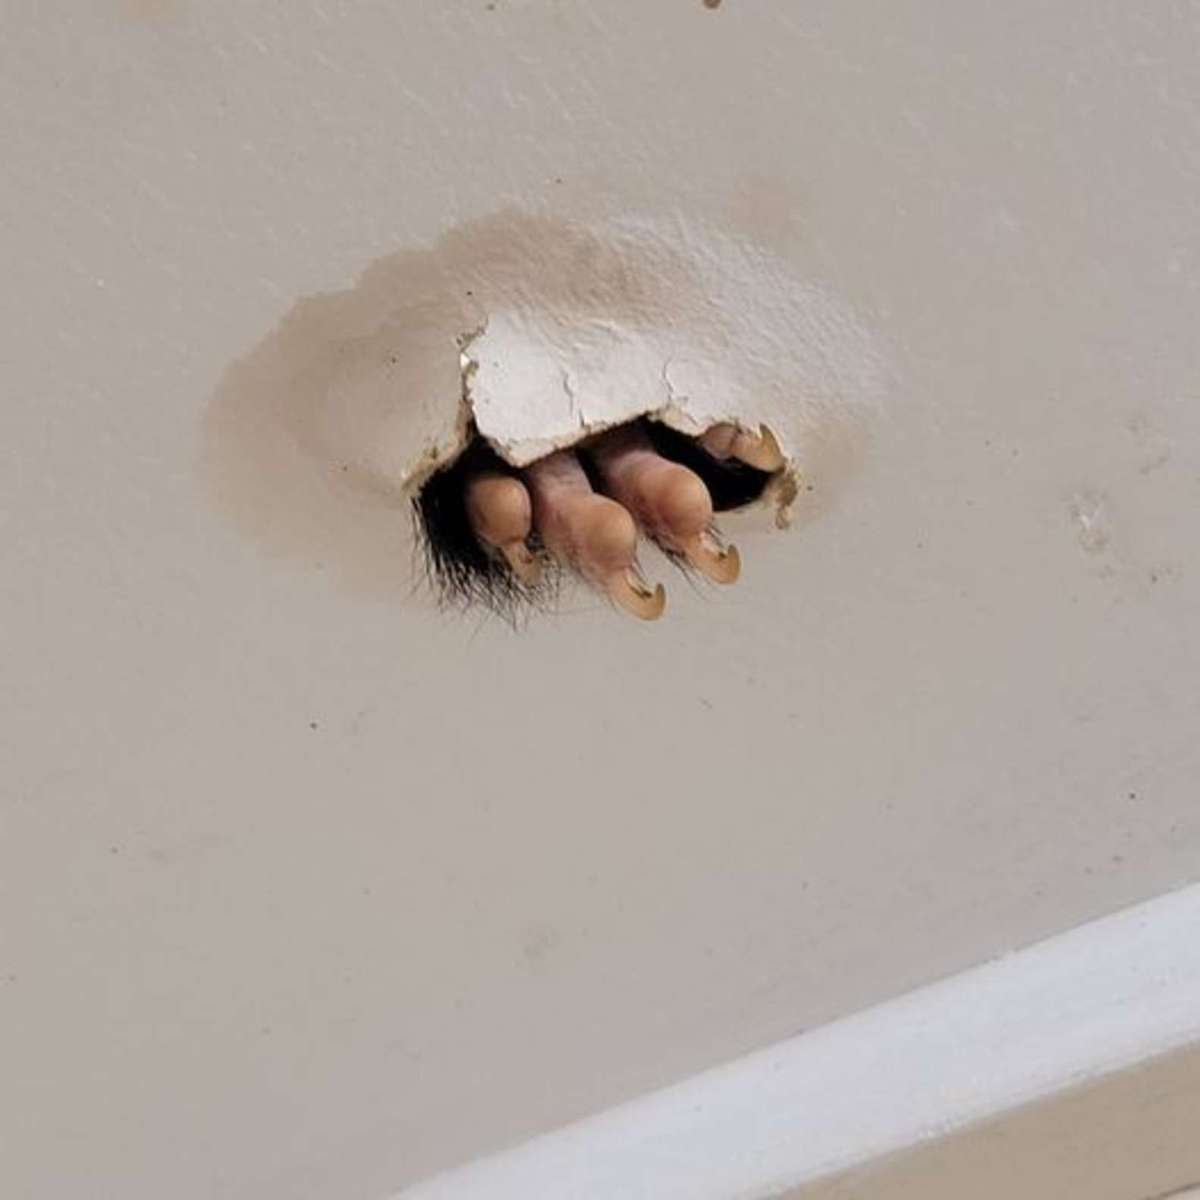 Австралийка увидела, как из потолка торчат чьи-то когти. Ситуация страшная, но её гость — настоящий милашка 18